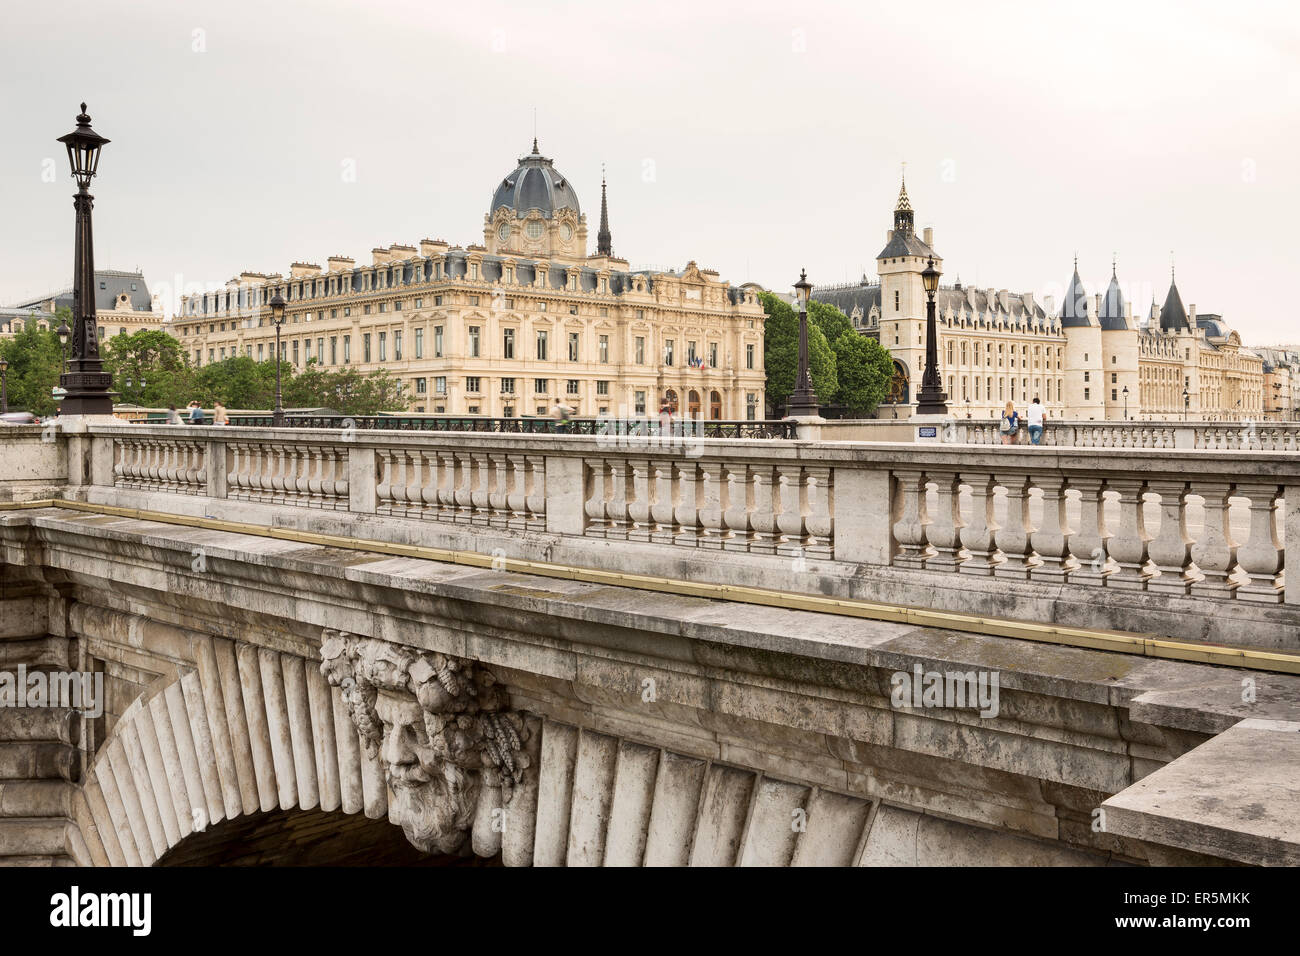 View over Pont de Notre Dame to Conciergerie, Palais de Justice de Paris, Ile de la Cite, Paris, Frankreich, Europa, UNESCO Worl Stock Photo